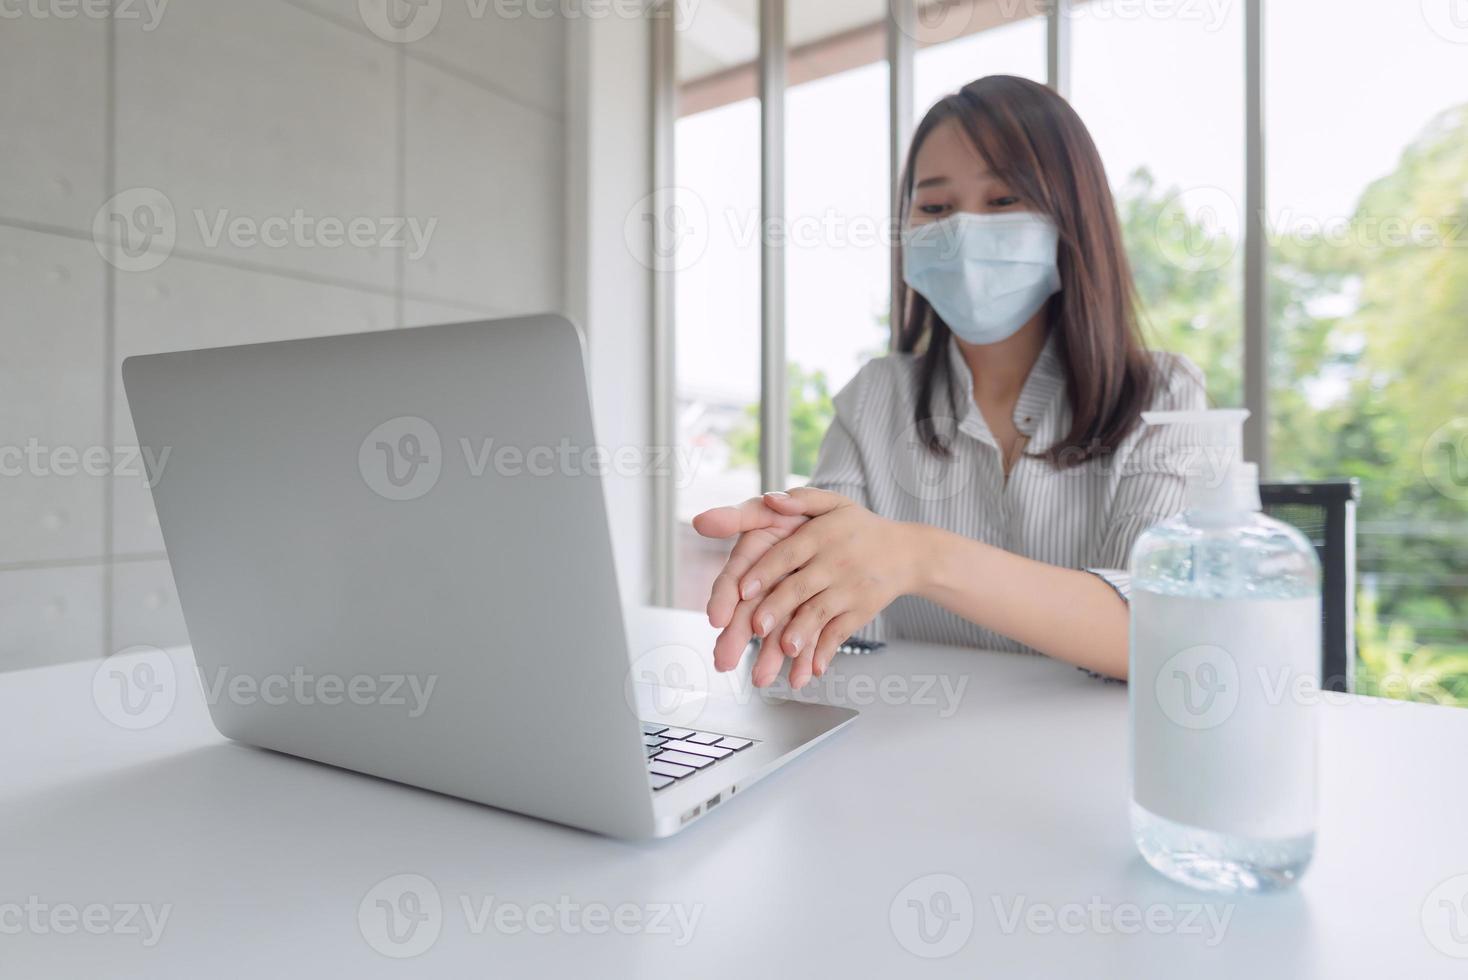 zakenvrouw die een masker draagt en persoonlijk ontsmettingsmiddel gebruikt om haar hand op kantoor schoon te maken om de hygiëne te behouden. preventief tijdens de periode van epidemie van coronavirus of covid19. foto